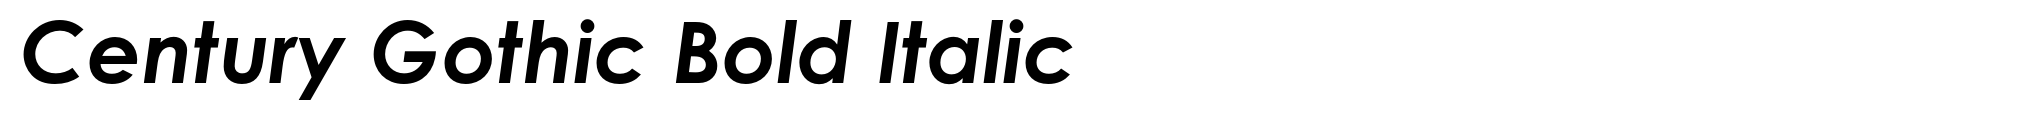 Century Gothic Bold Italic image